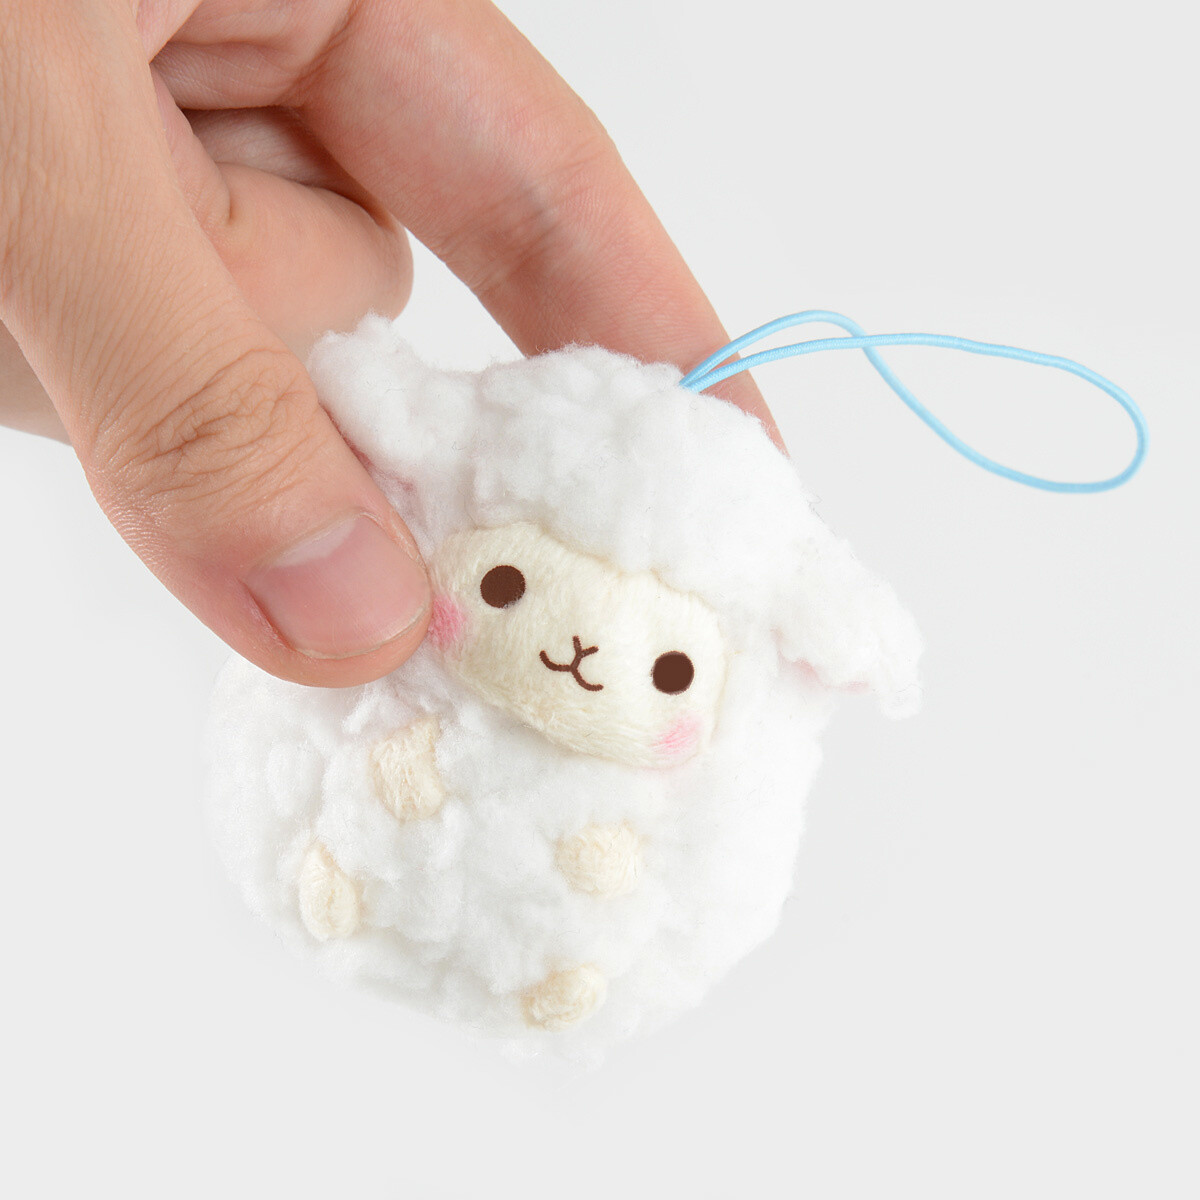 wooly baby sheep plush